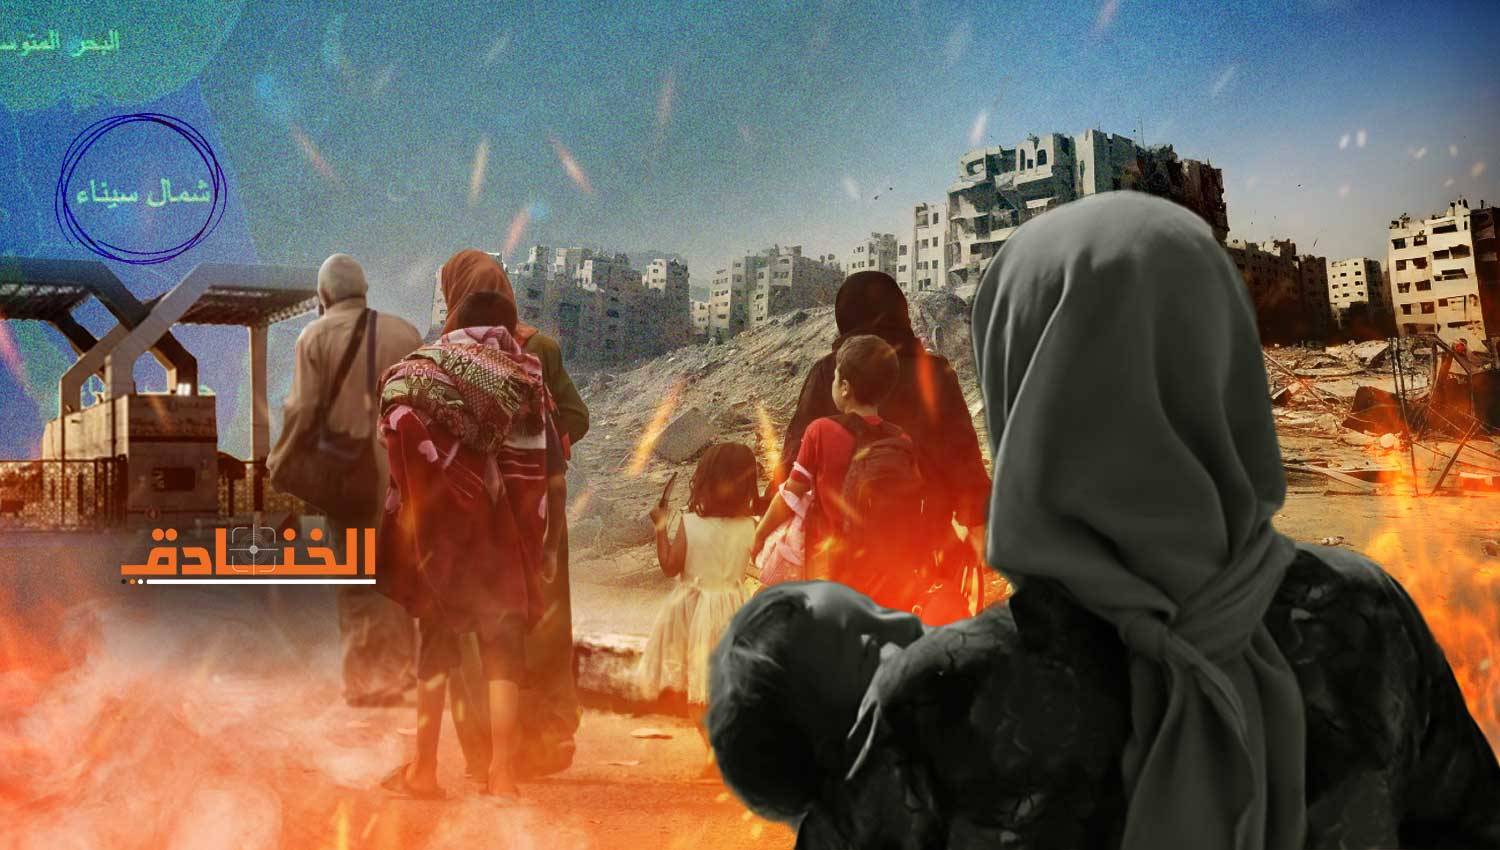  تهجير الفلسطينيين إلى سيناء من أهداف الحرب